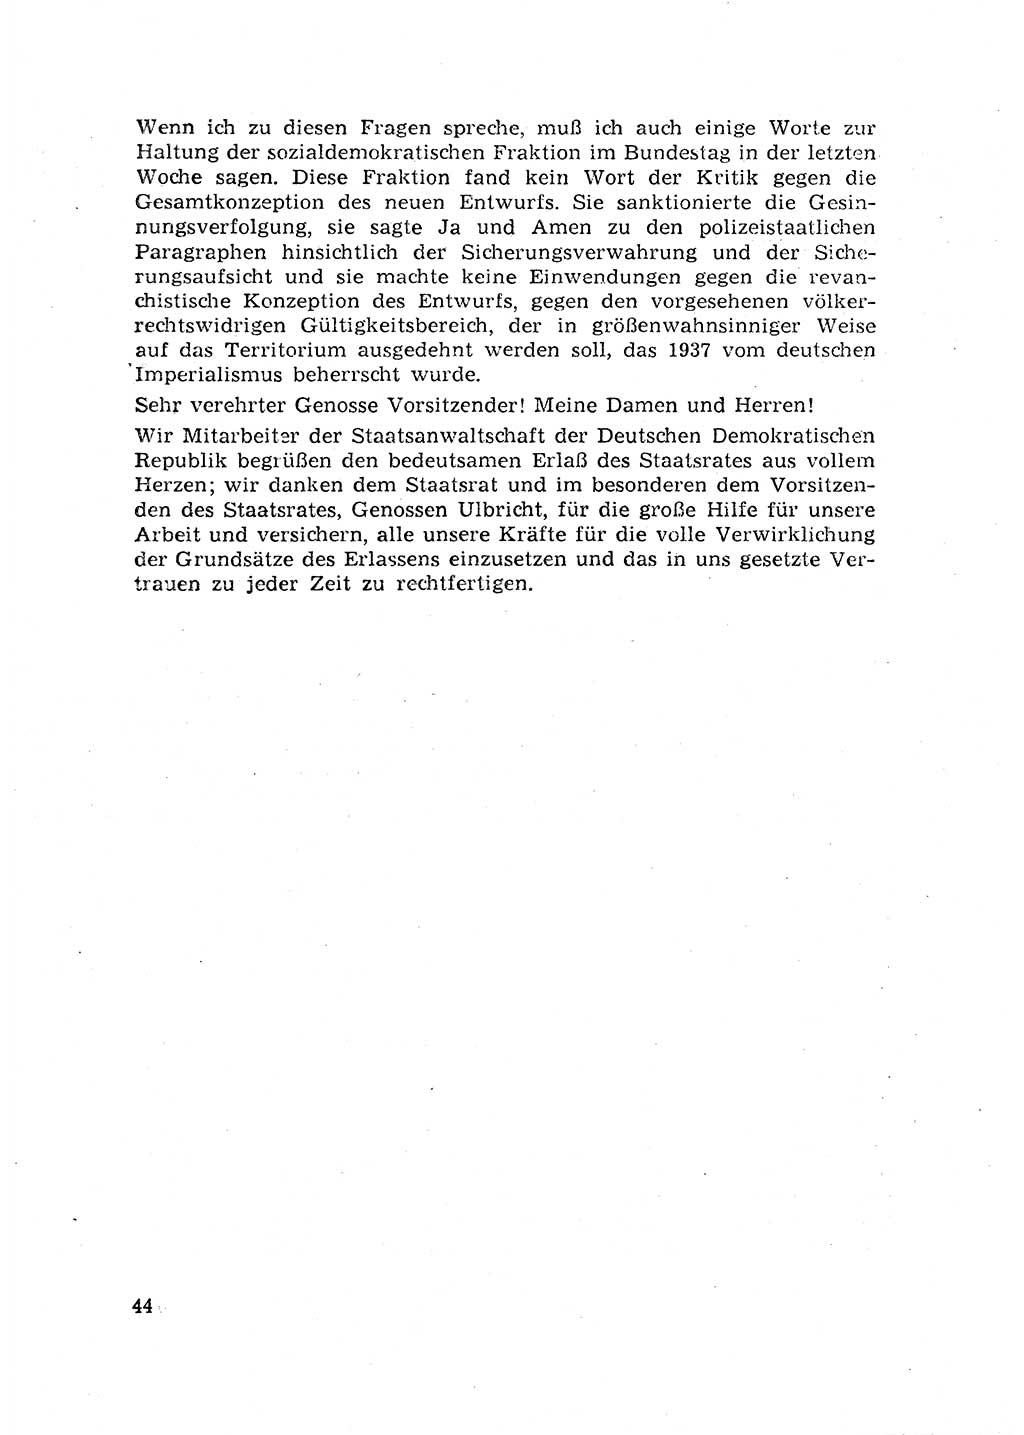 Rechtspflegeerlaß [Deutsche Demokratische Republik (DDR)] 1963, Seite 44 (R.-Pfl.-Erl. DDR 1963, S. 44)